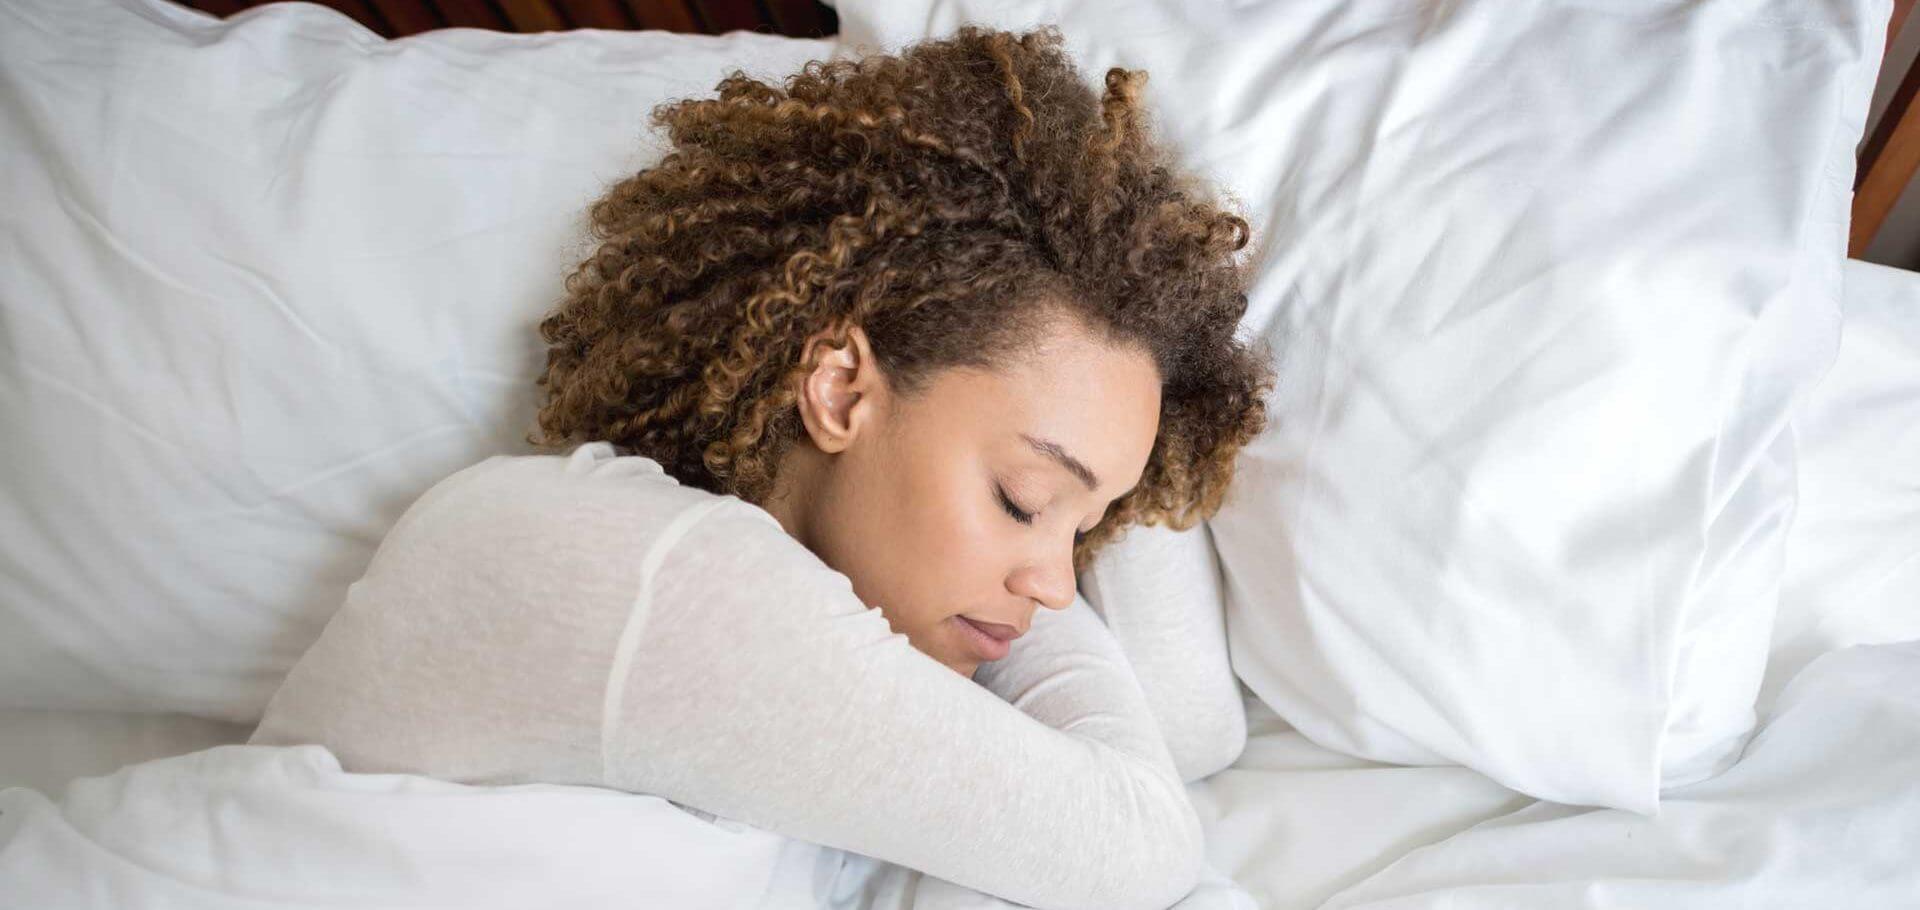 Nhận phần còn lại bạn xứng đáng: glycine có thể giúp bạn tận hưởng giấc ngủ sâu hơn, khỏe mạnh hơn